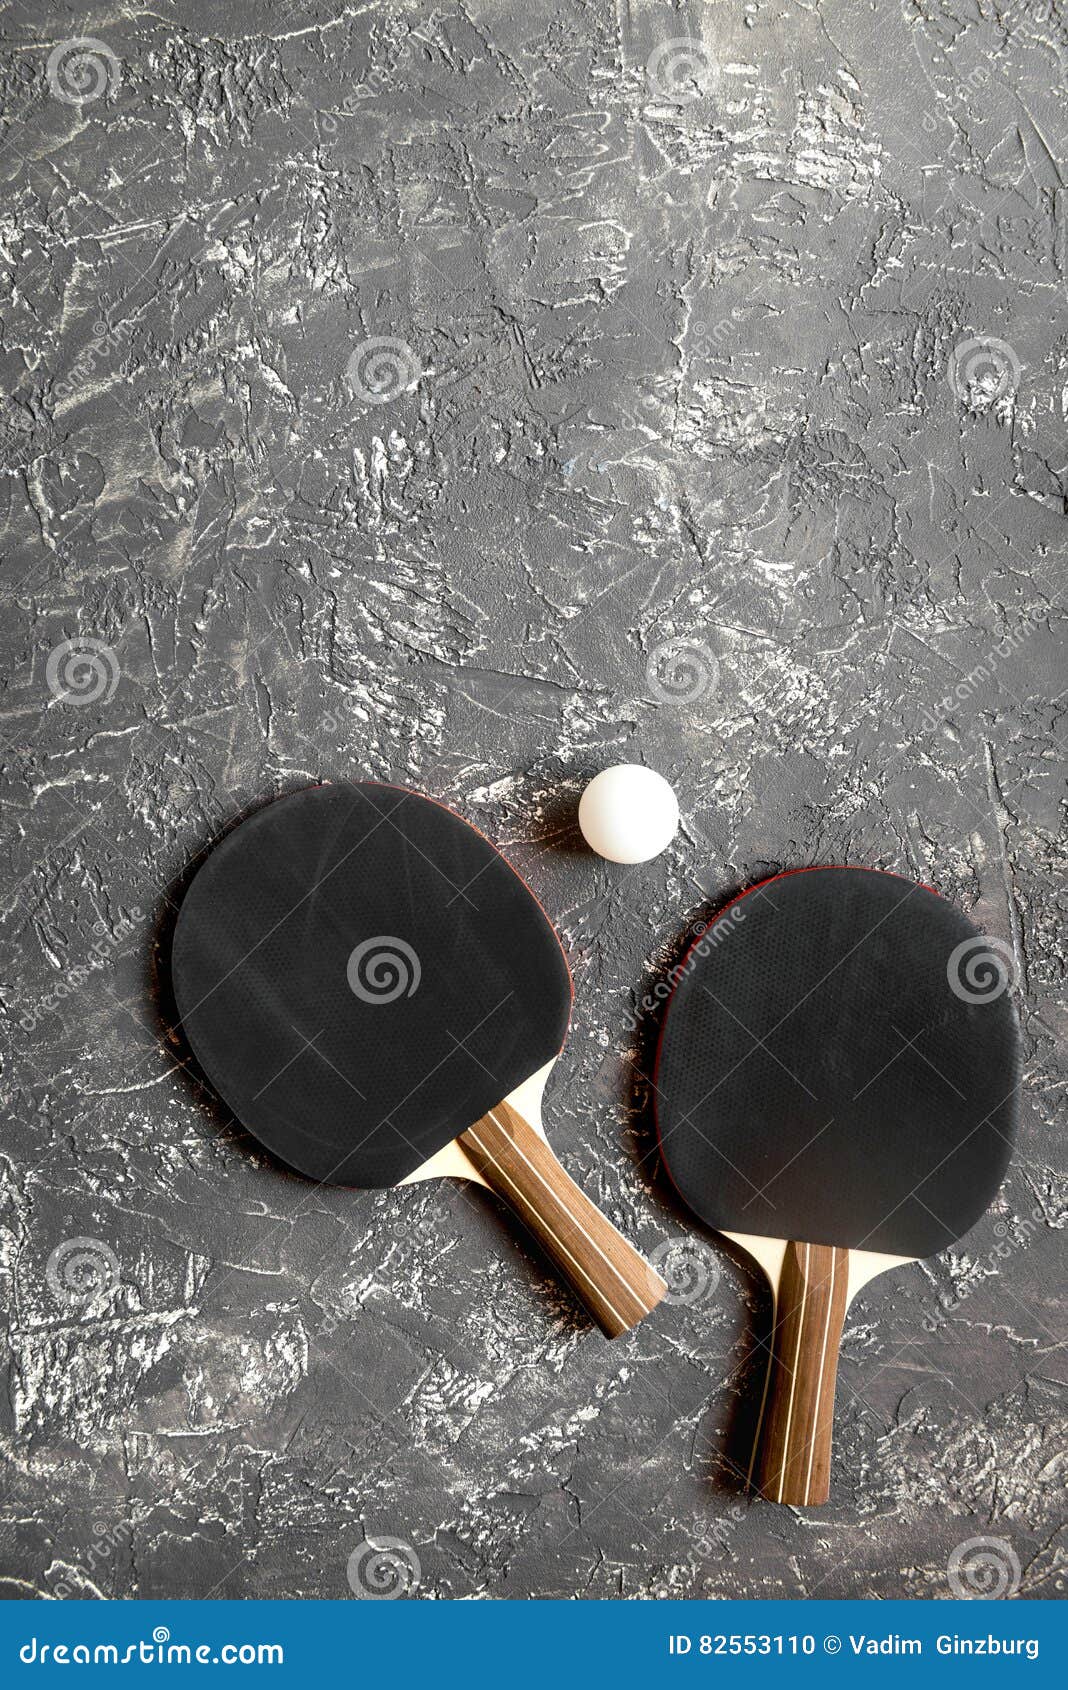 Czarny kant dla śwista pong balowego szarego tła odgórnego widoku. Czarny kant dla śwista pong piłki na szarego tła odgórnym widoku